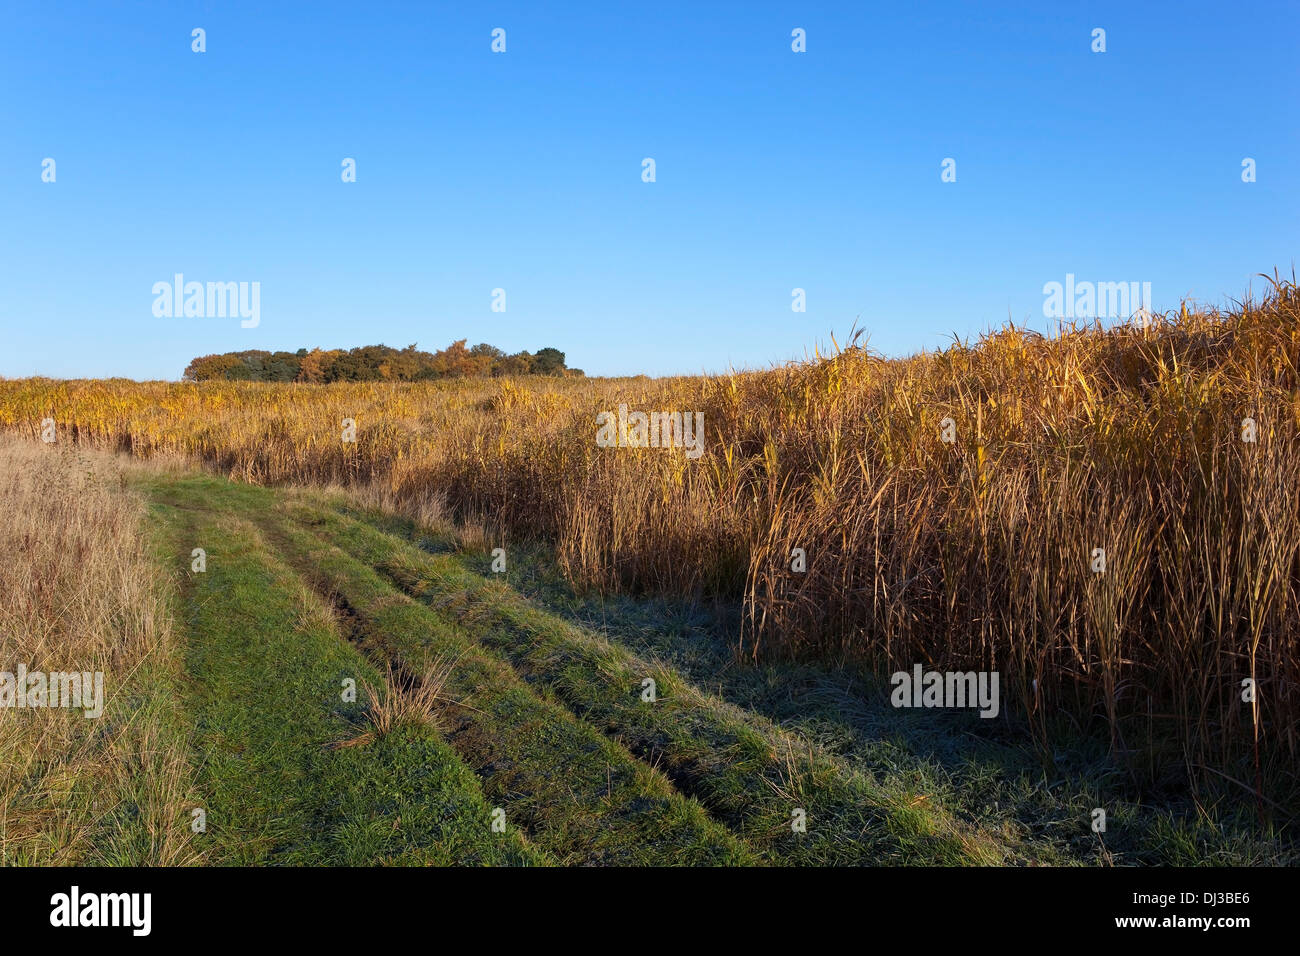 Eine englische Herbstlandschaft mit einem frostigen Rasen verfolgen durch Elefantengras in Richtung fernen Wald Stockfoto